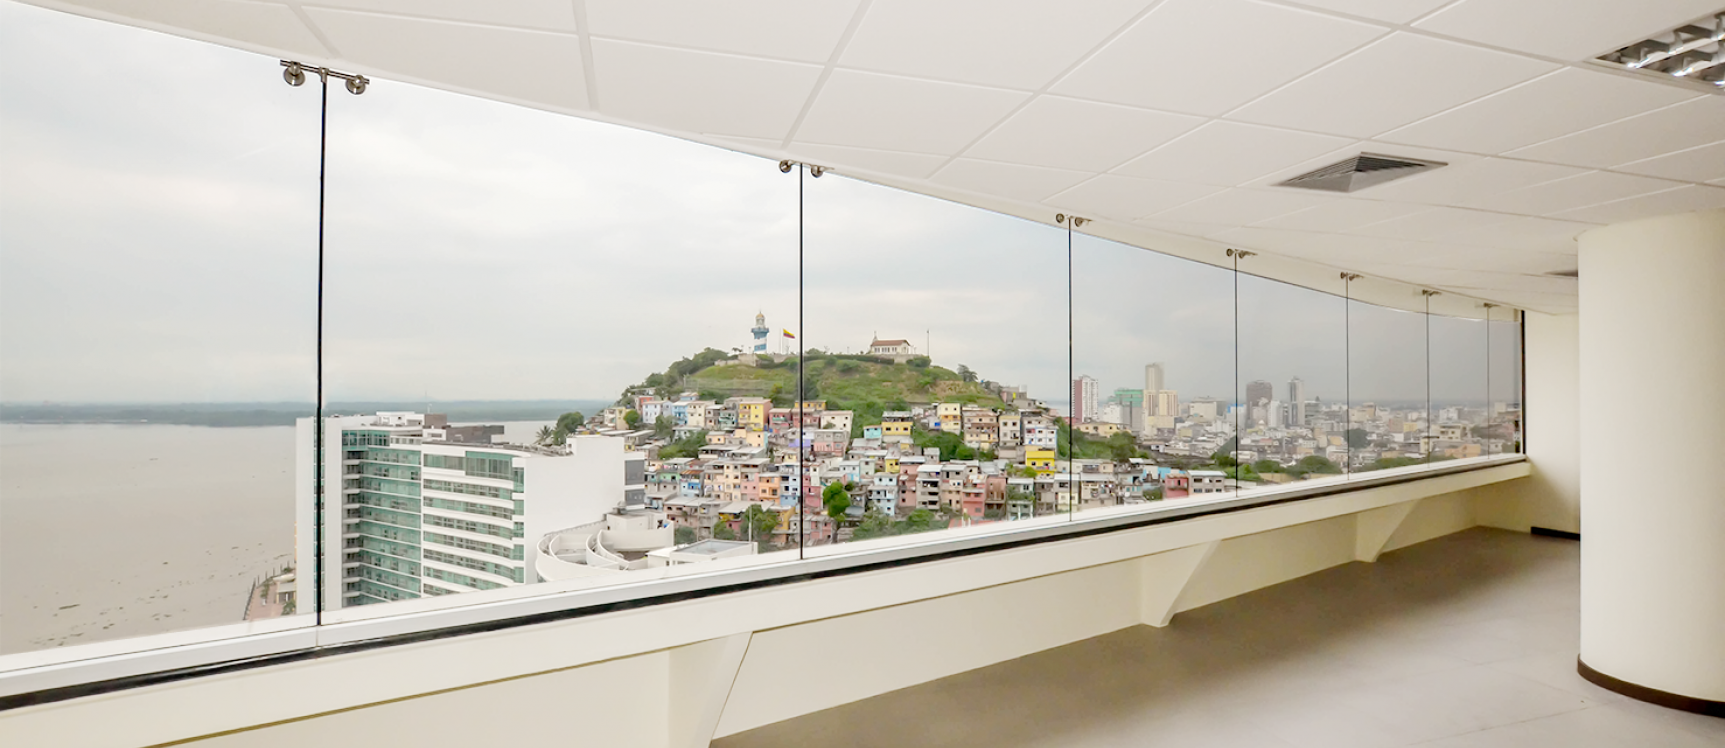 GeoBienes - Oficina en alquiler en edificio The Point sector centro de Guayaquil - Plusvalia Guayaquil Casas de venta y alquiler Inmobiliaria Ecuador